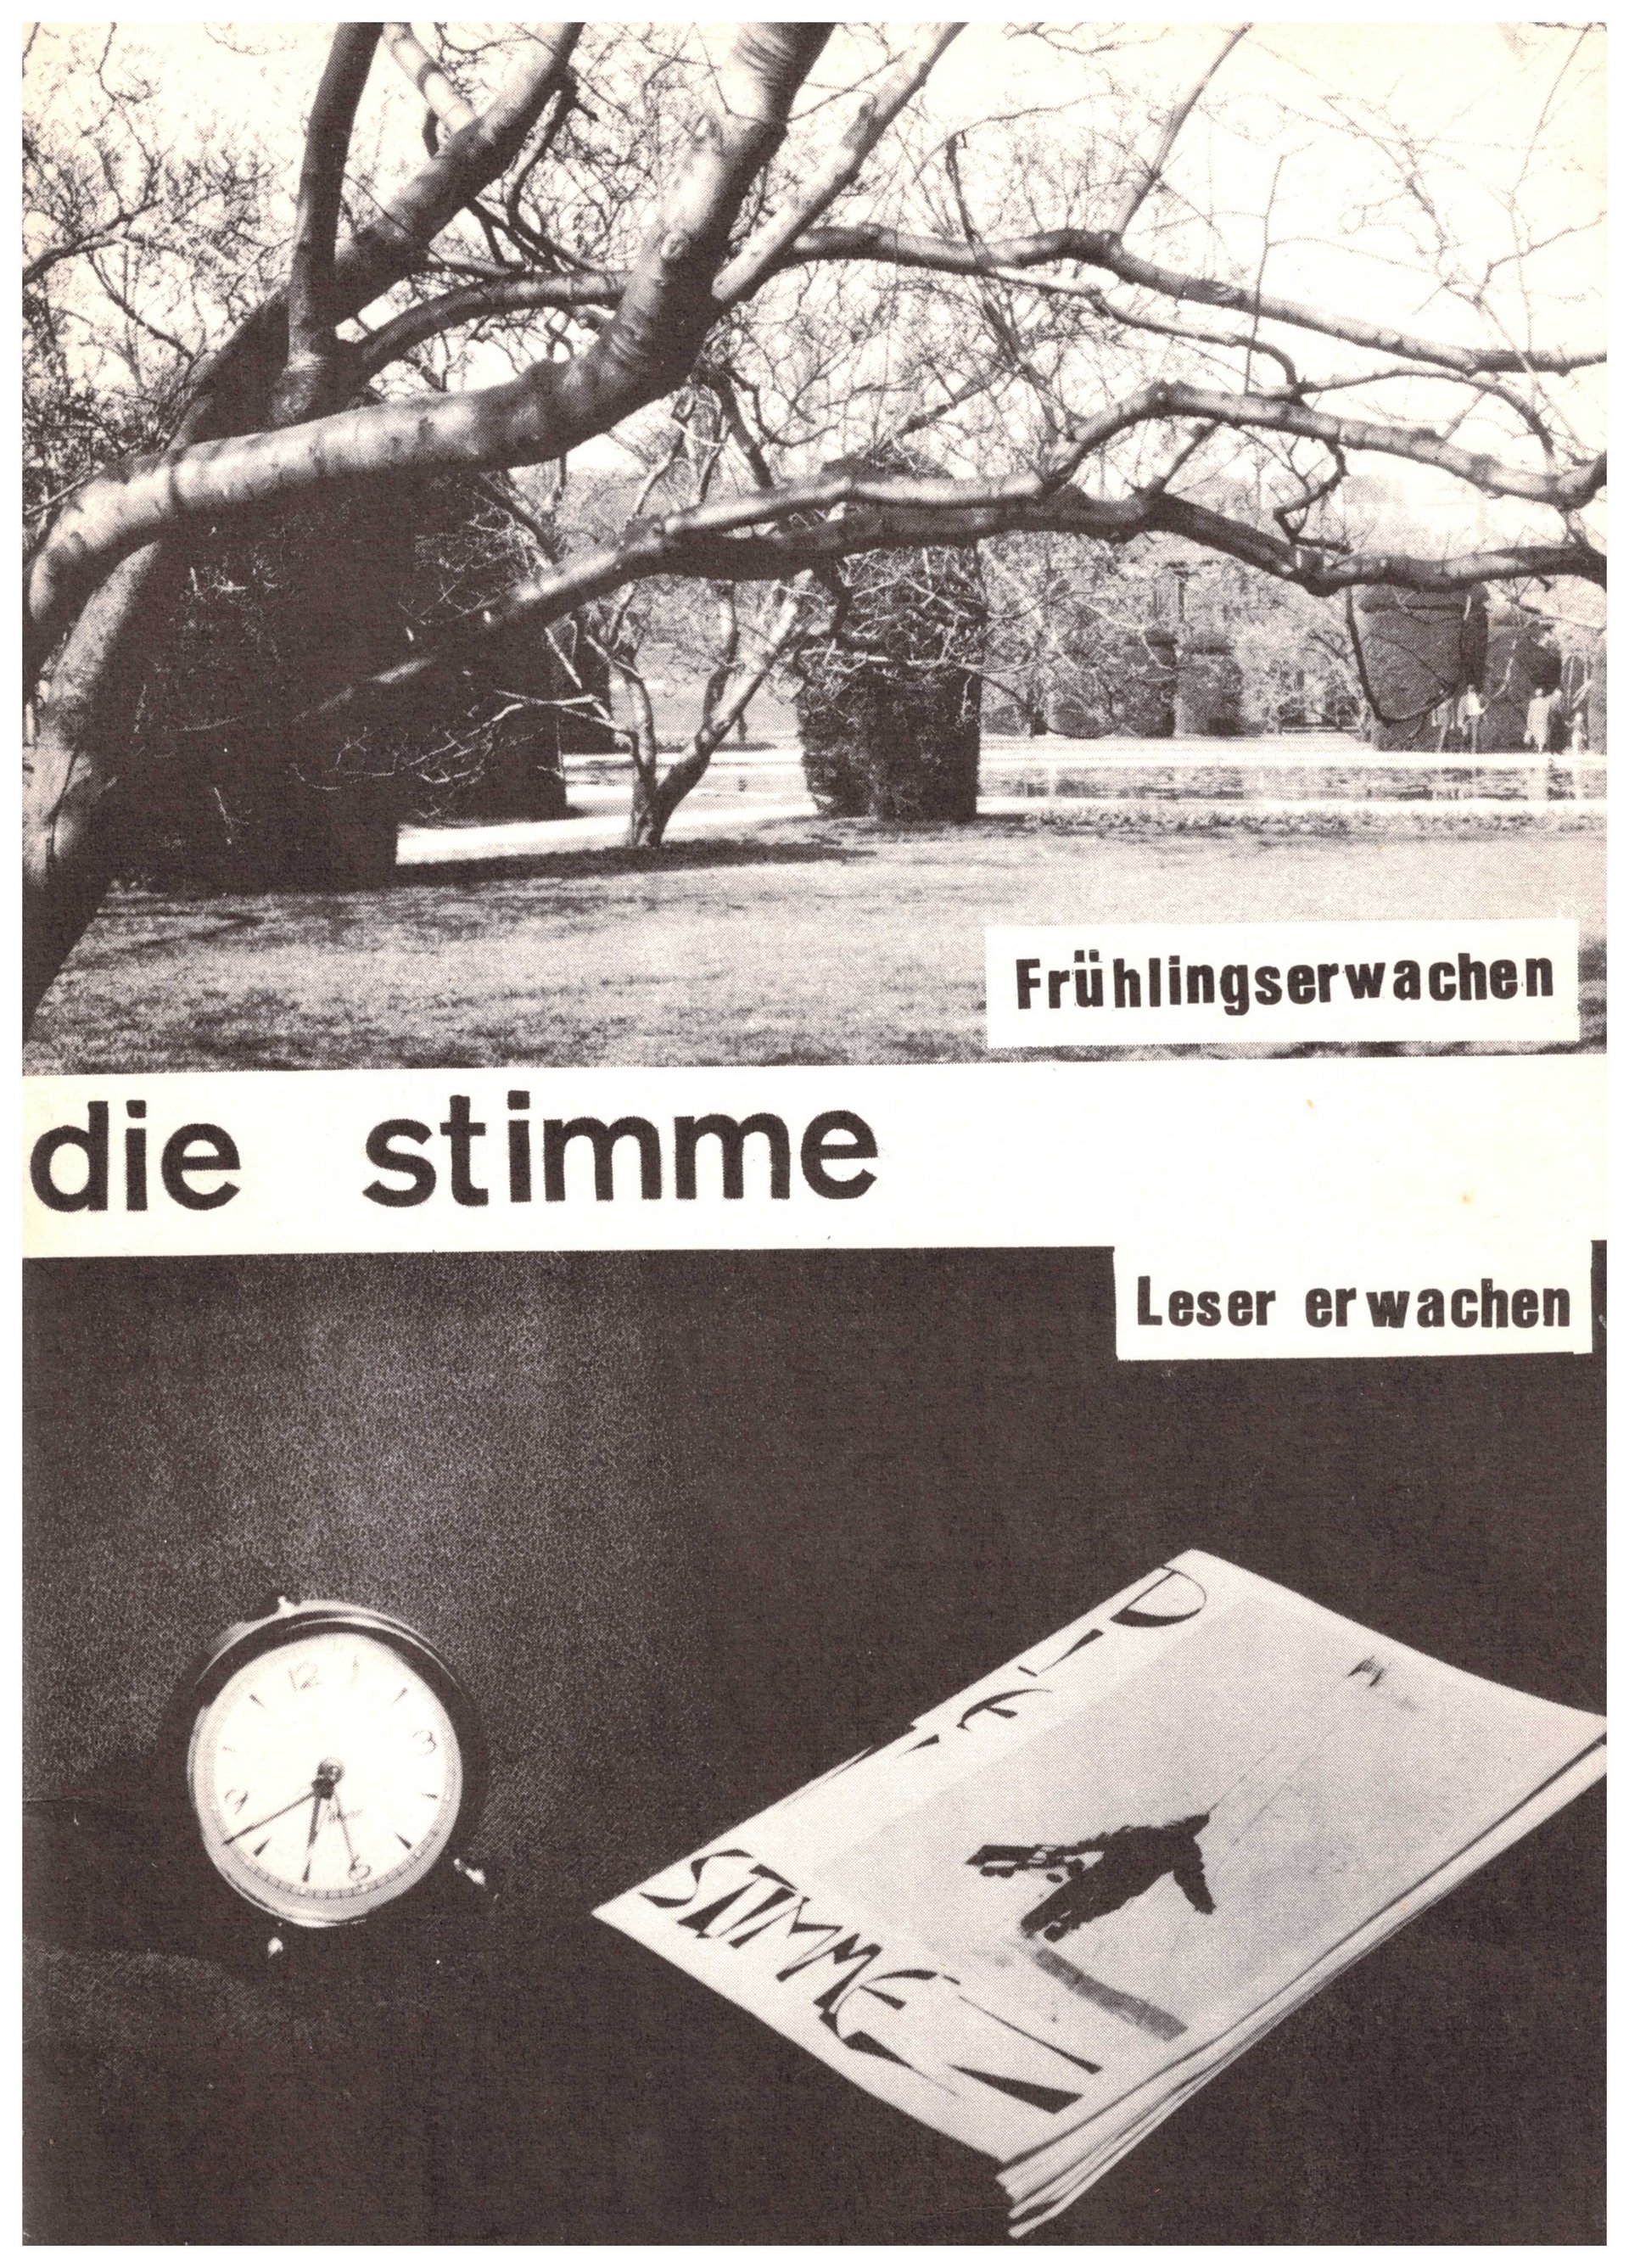 Die Schülerzeitung "Die Stimme" mit Leserbriefen (frühe 60er Jahre)